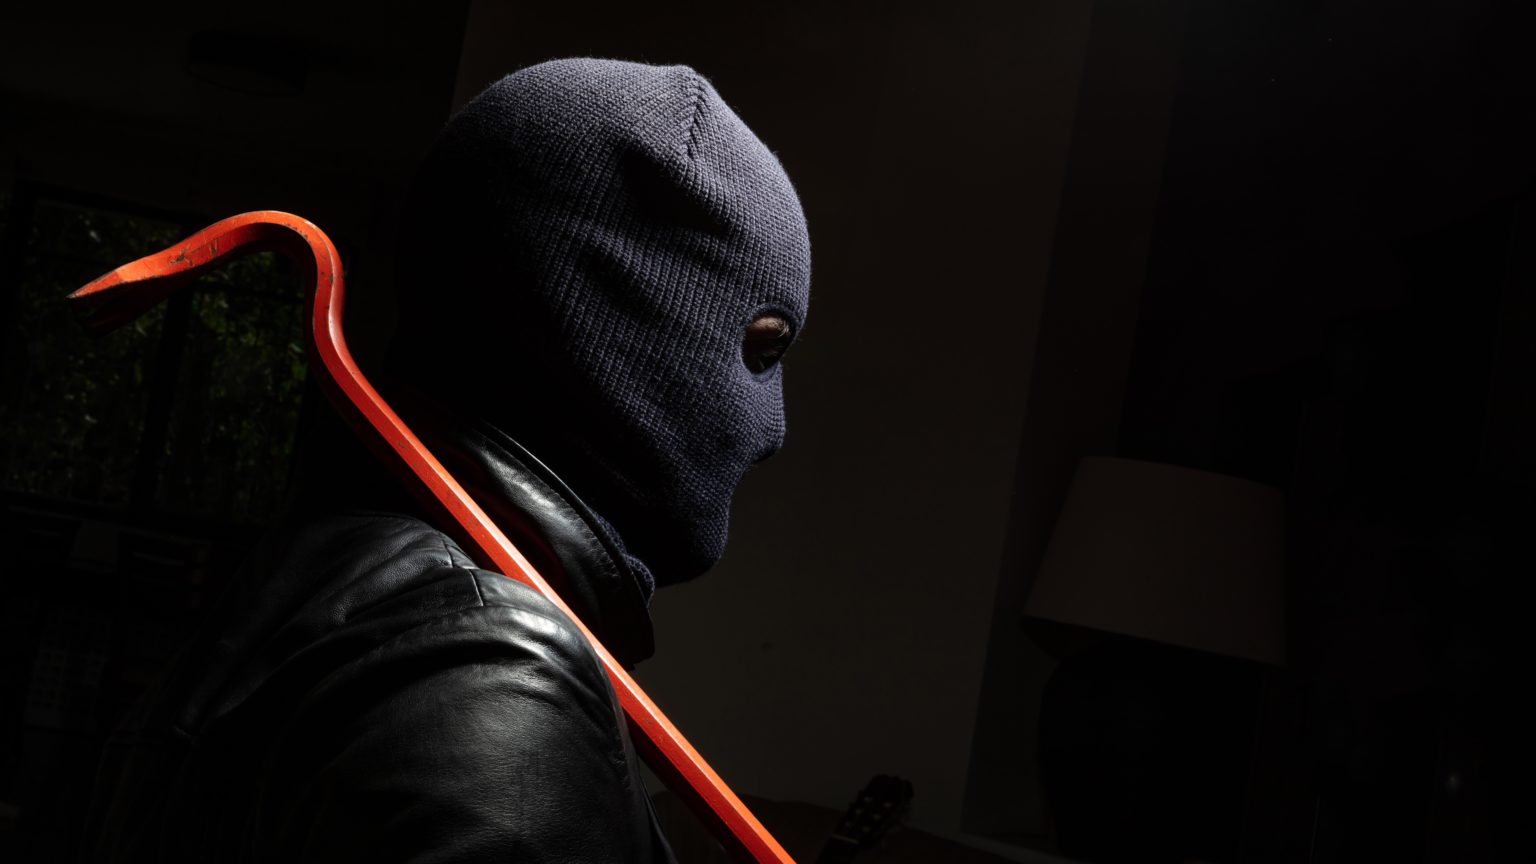 Uhićen 27-godišnji provalnik u Šibeniku: Otuđio 1670 eura iz ugostiteljskog objekta